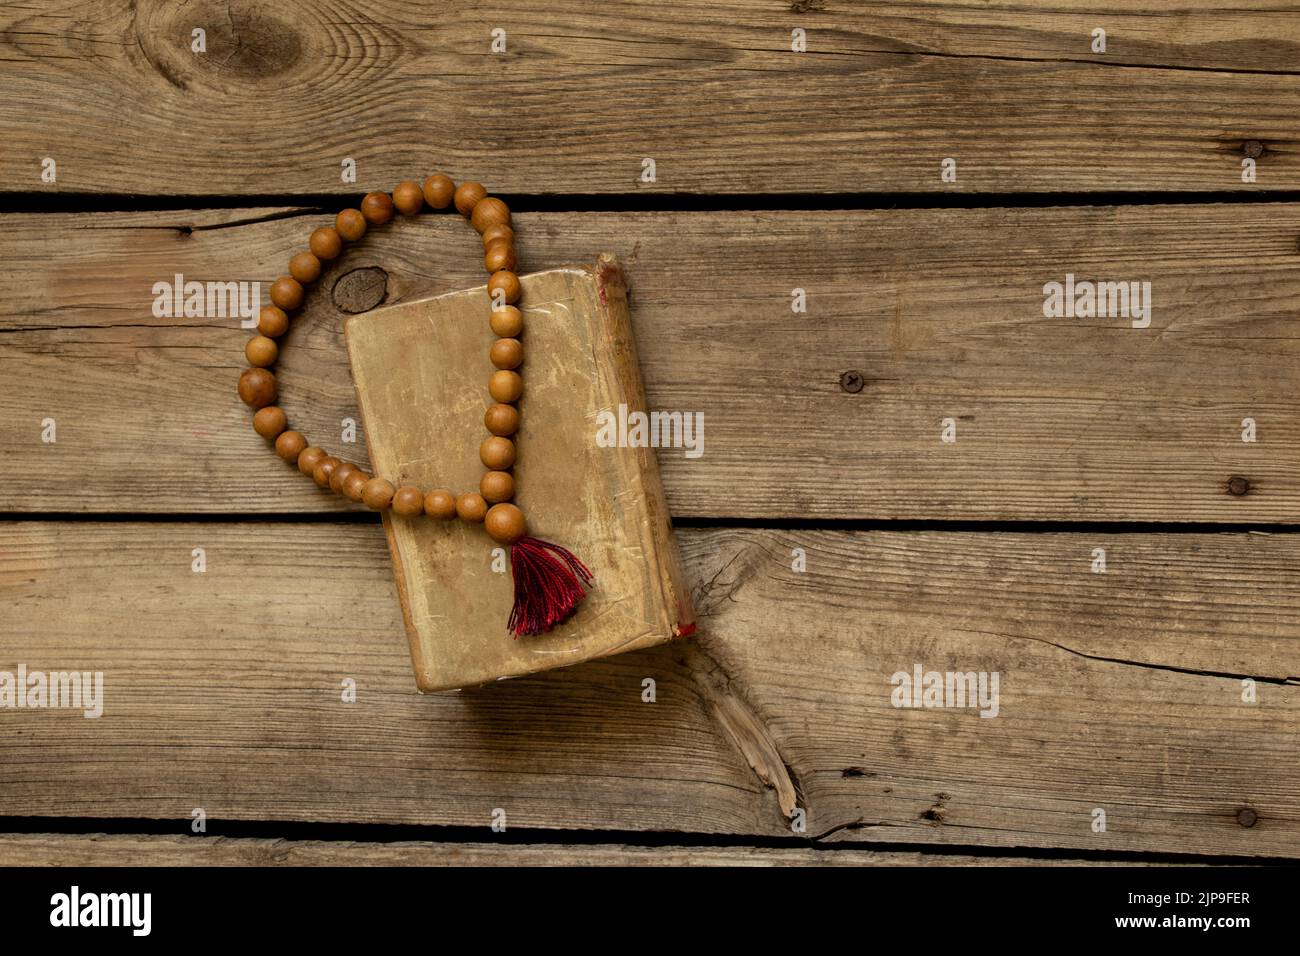 Il rosario di legno giace sulla bibbia su una tavola di legno, la bibbia e la religione, la fede e Dio Foto Stock